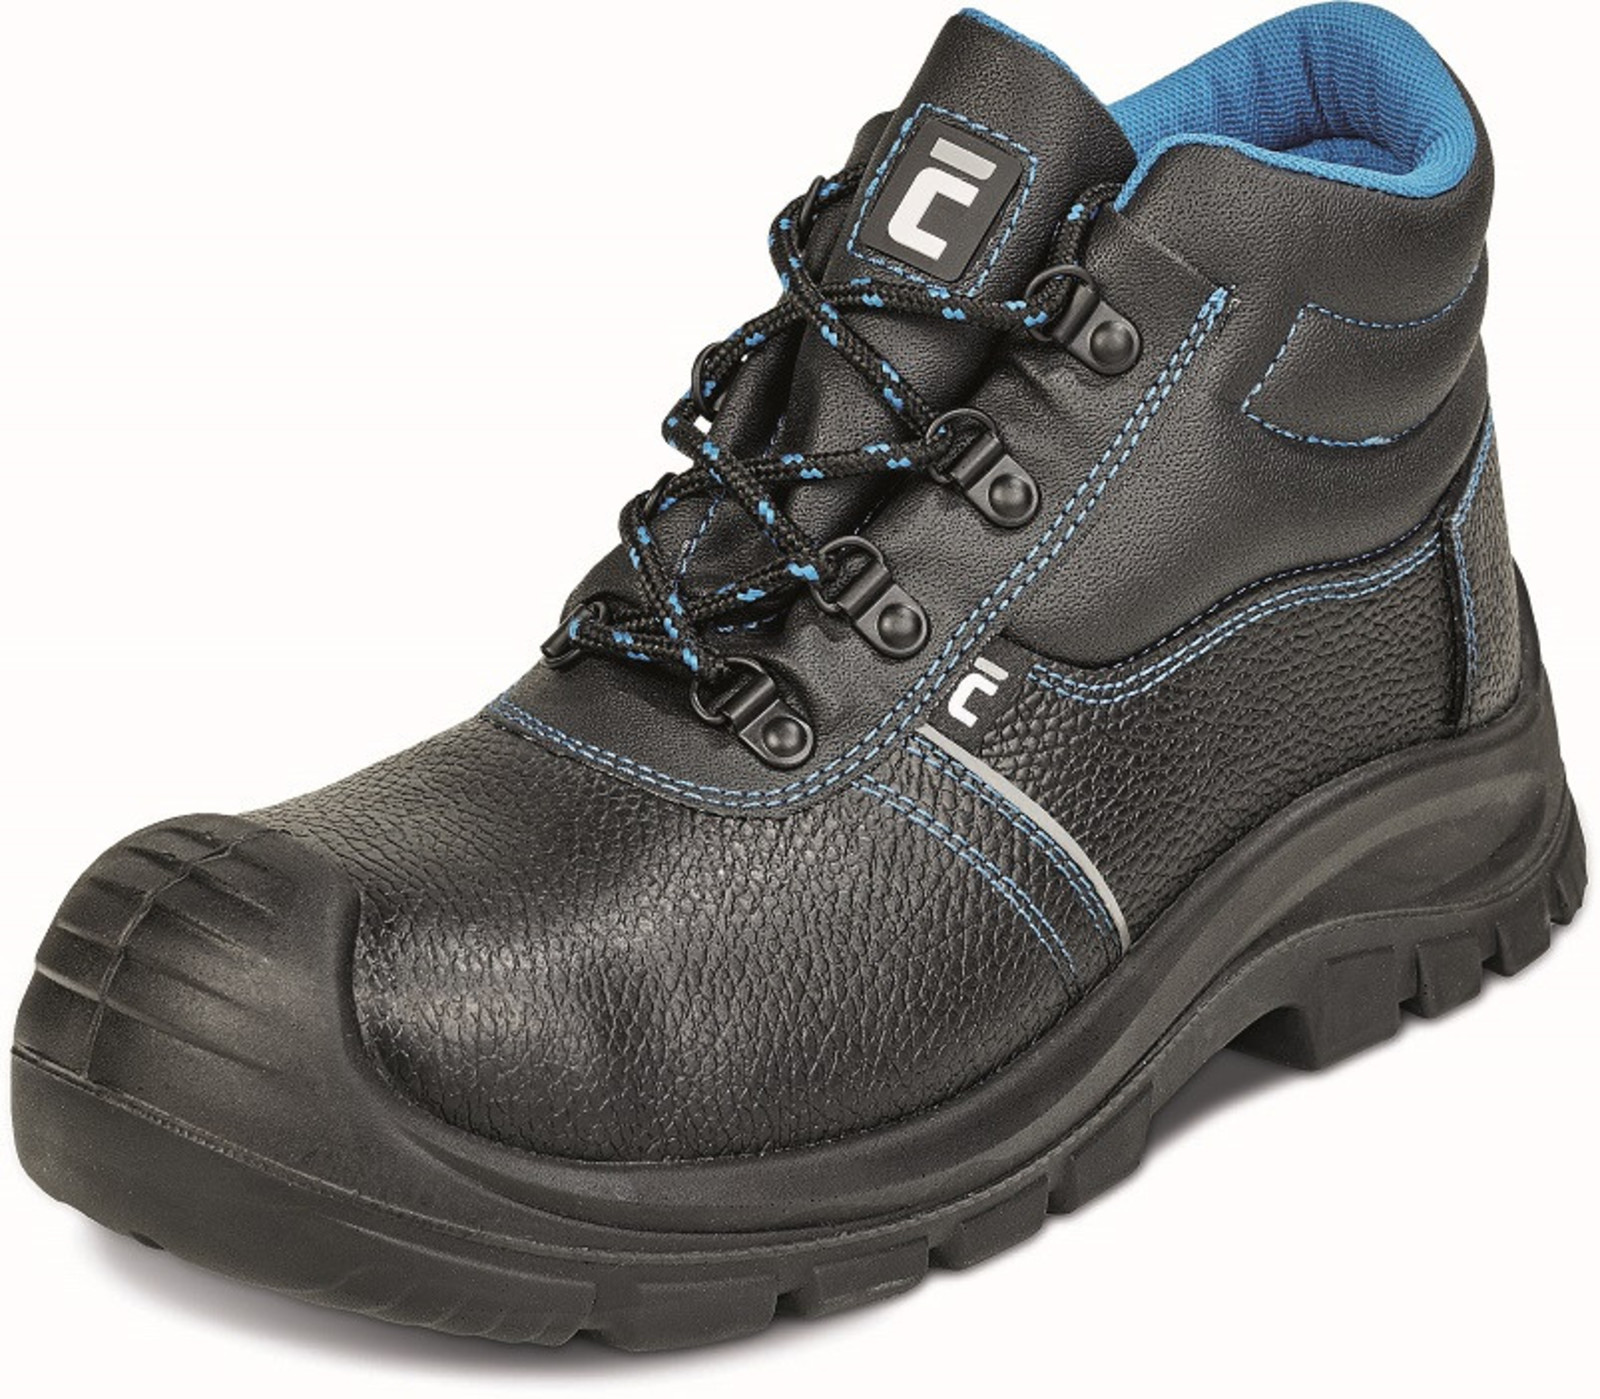 Pracovná obuv Cerva XT O1 - veľkosť: 42, farba: čierna